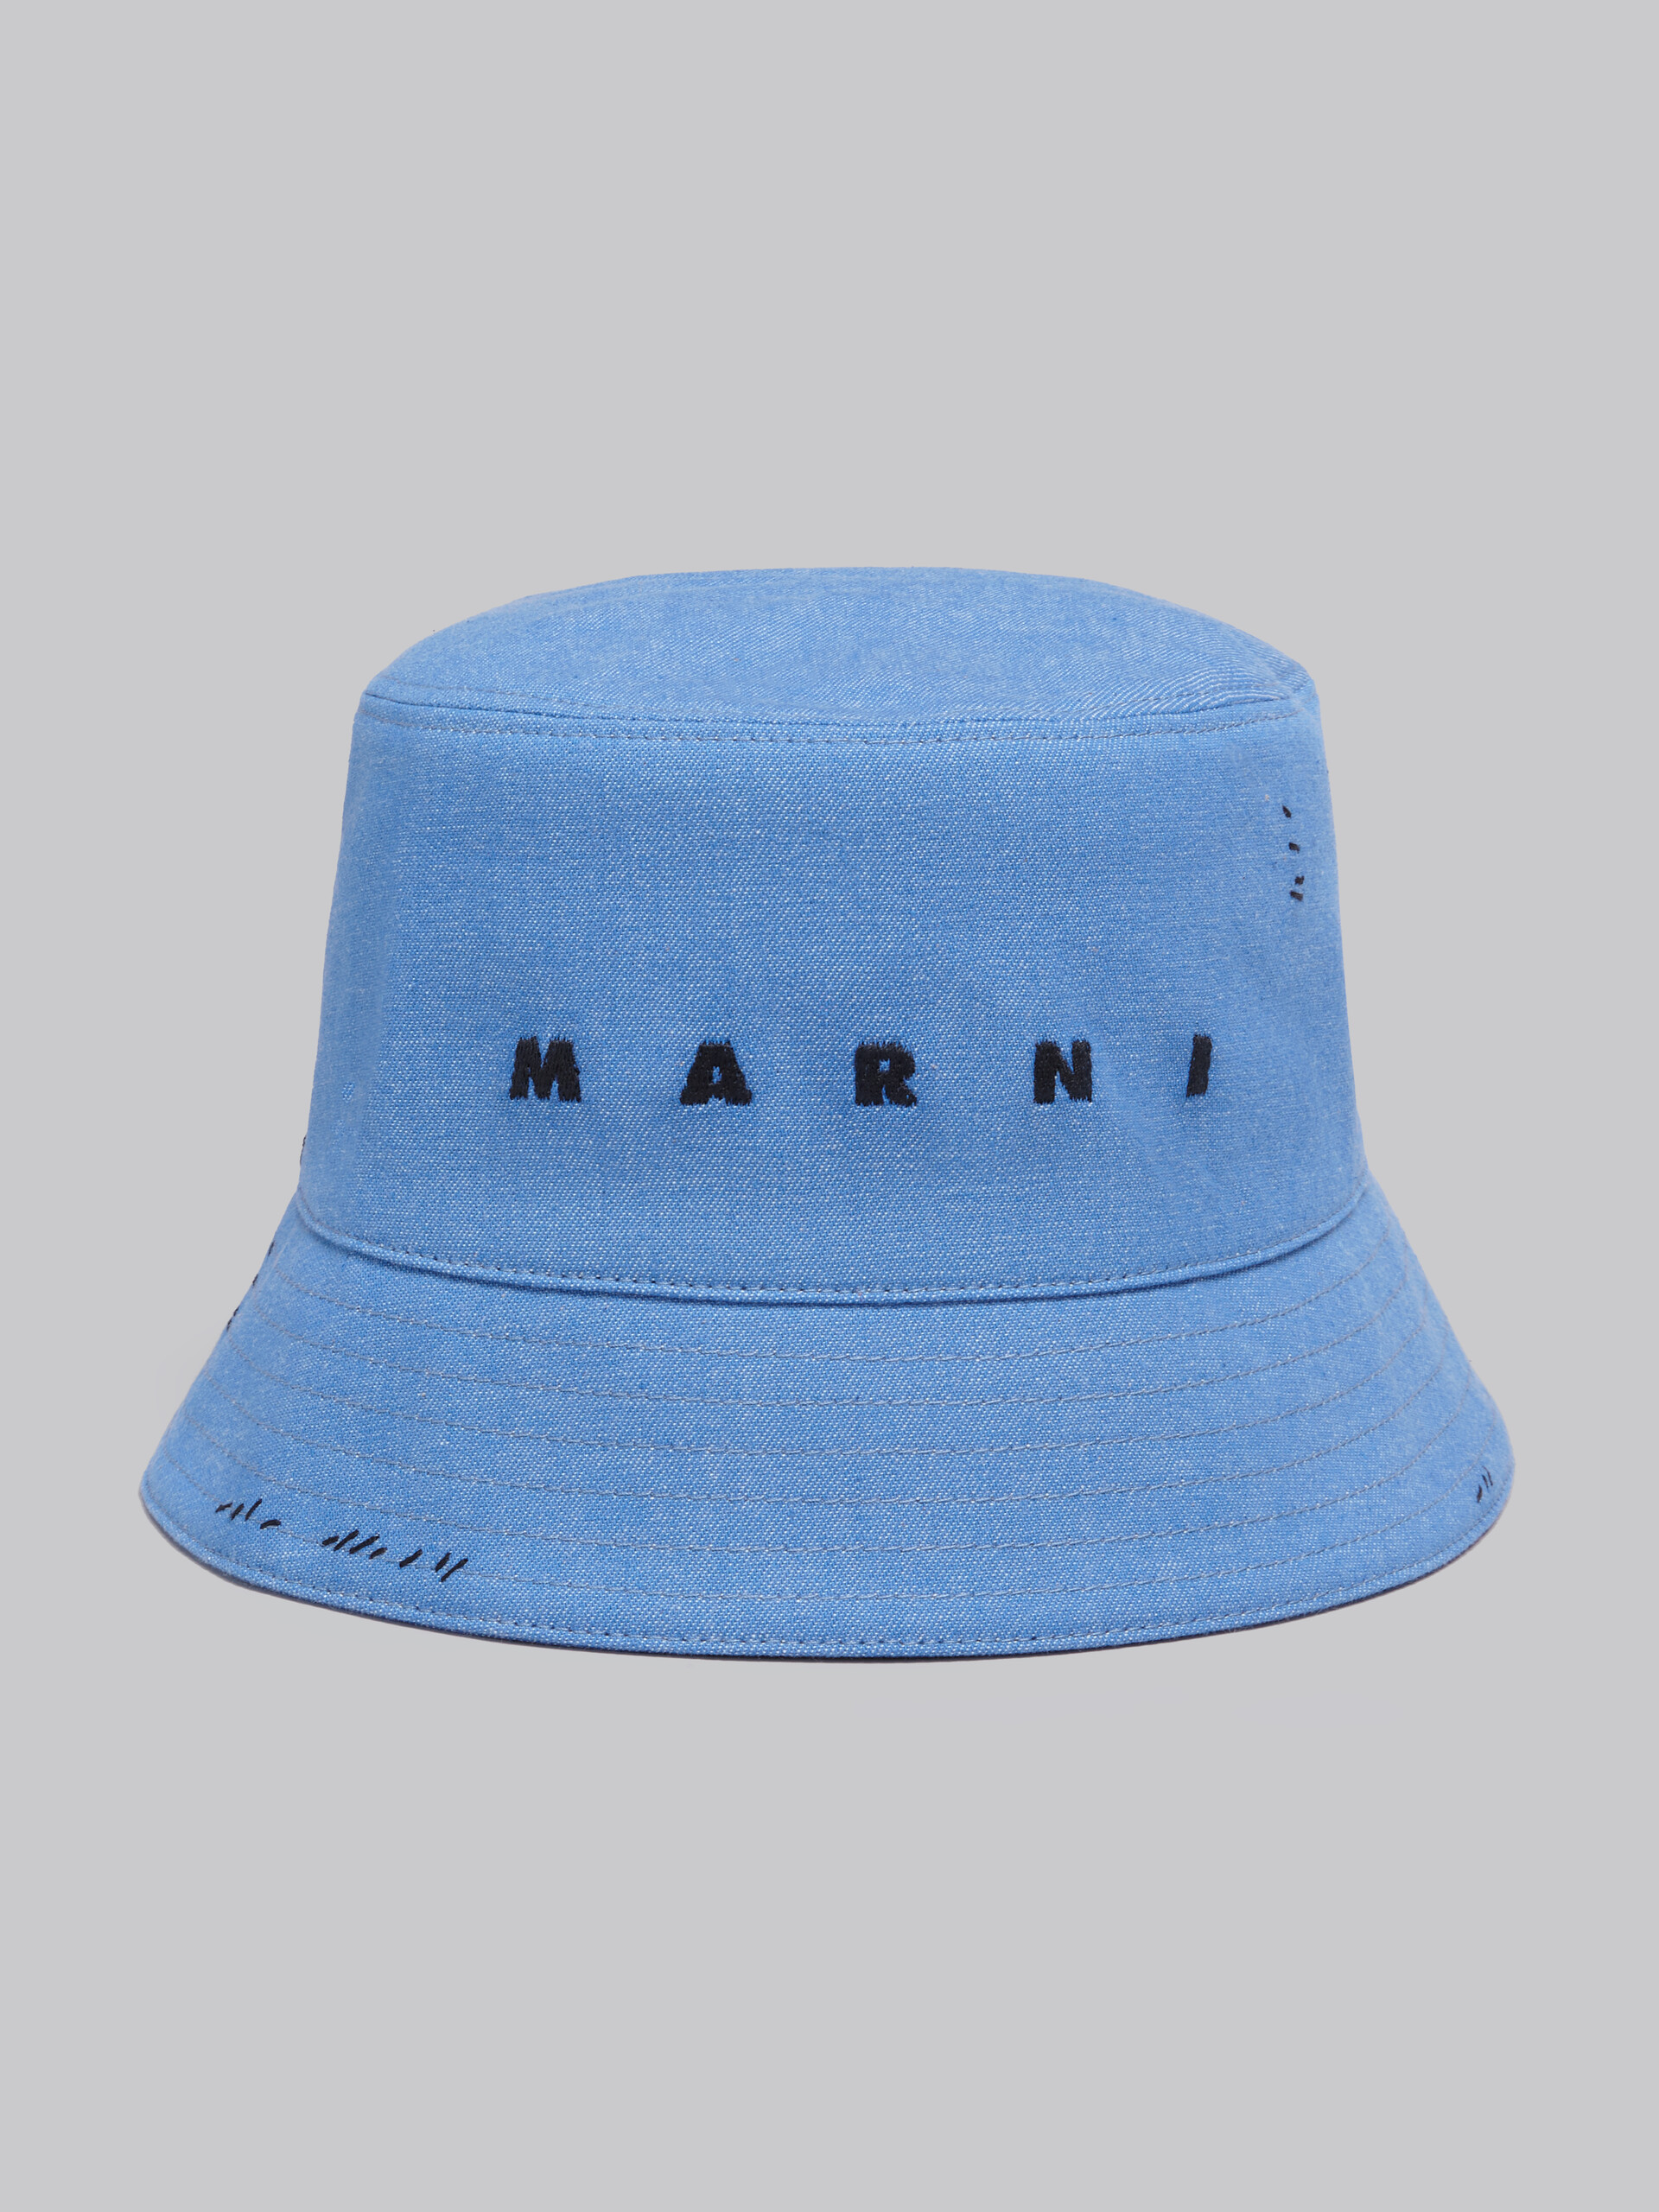 마르니 멘딩 장식 블루 데님 버킷 햇 - 모자 - Image 4